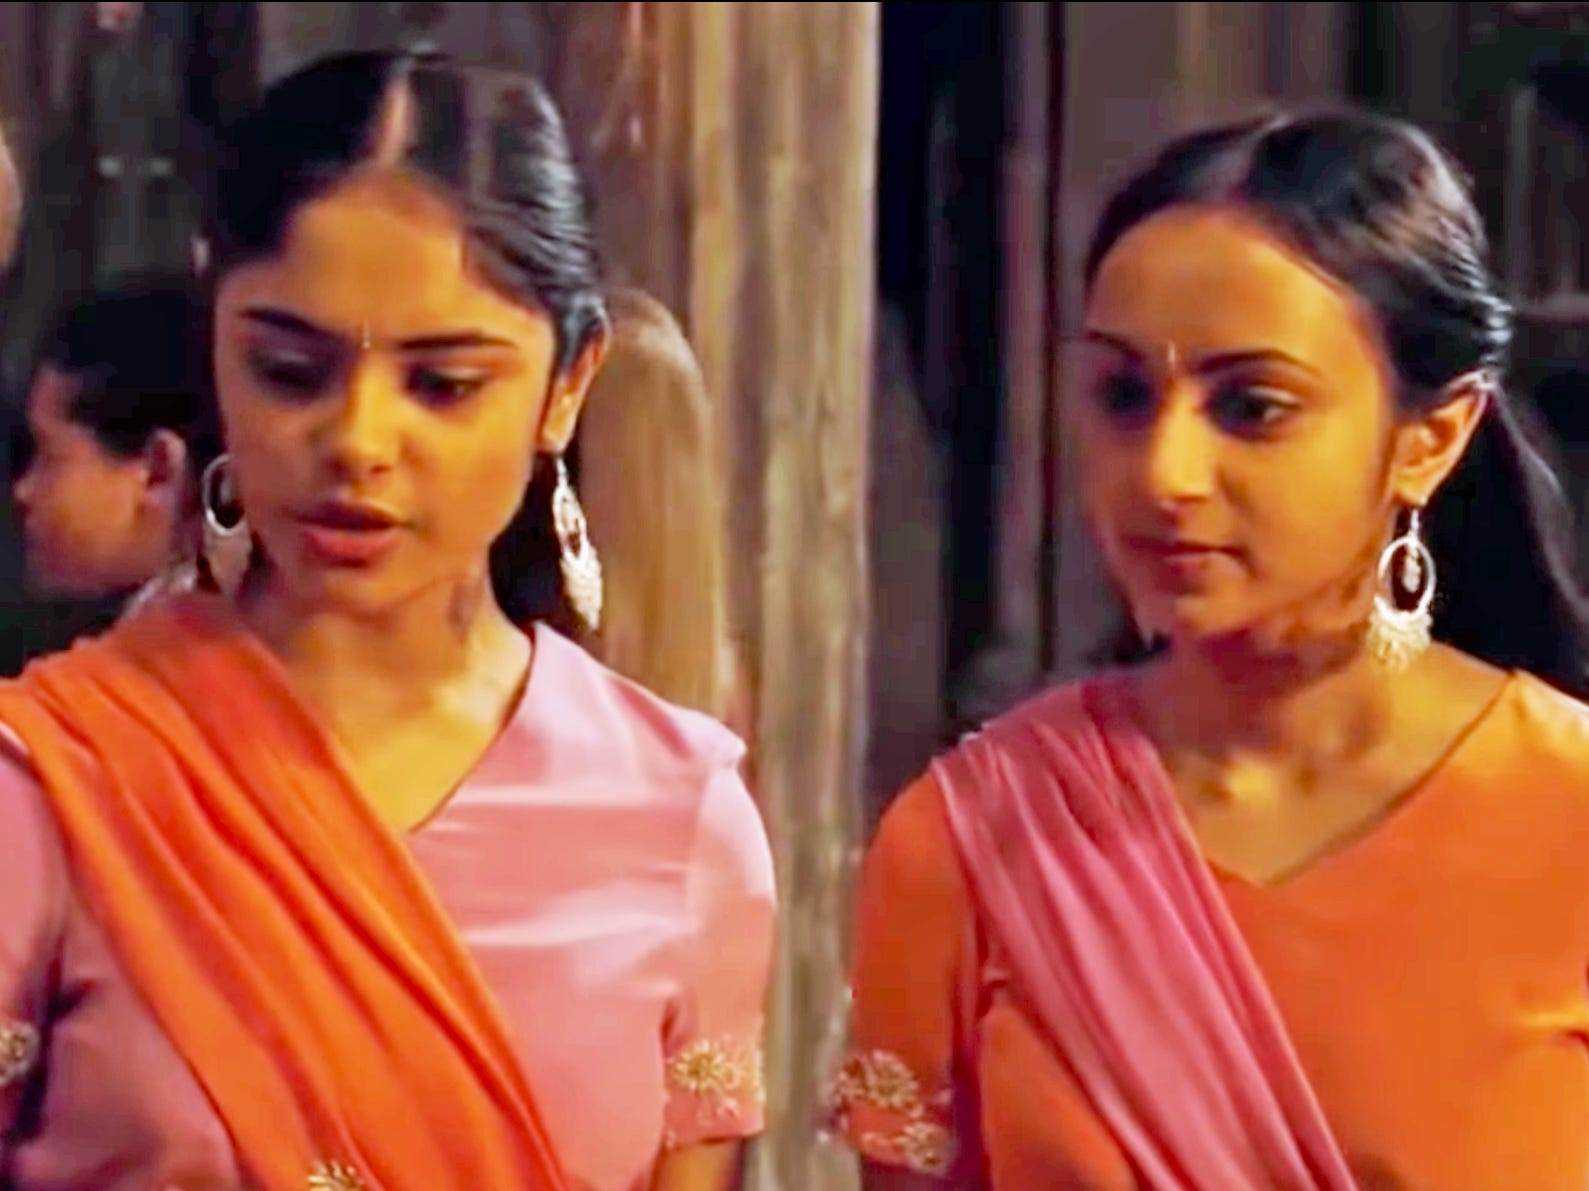 Parvati und Padma Patil beim Weihnachtsball Harry Potter und der Feuerkelch